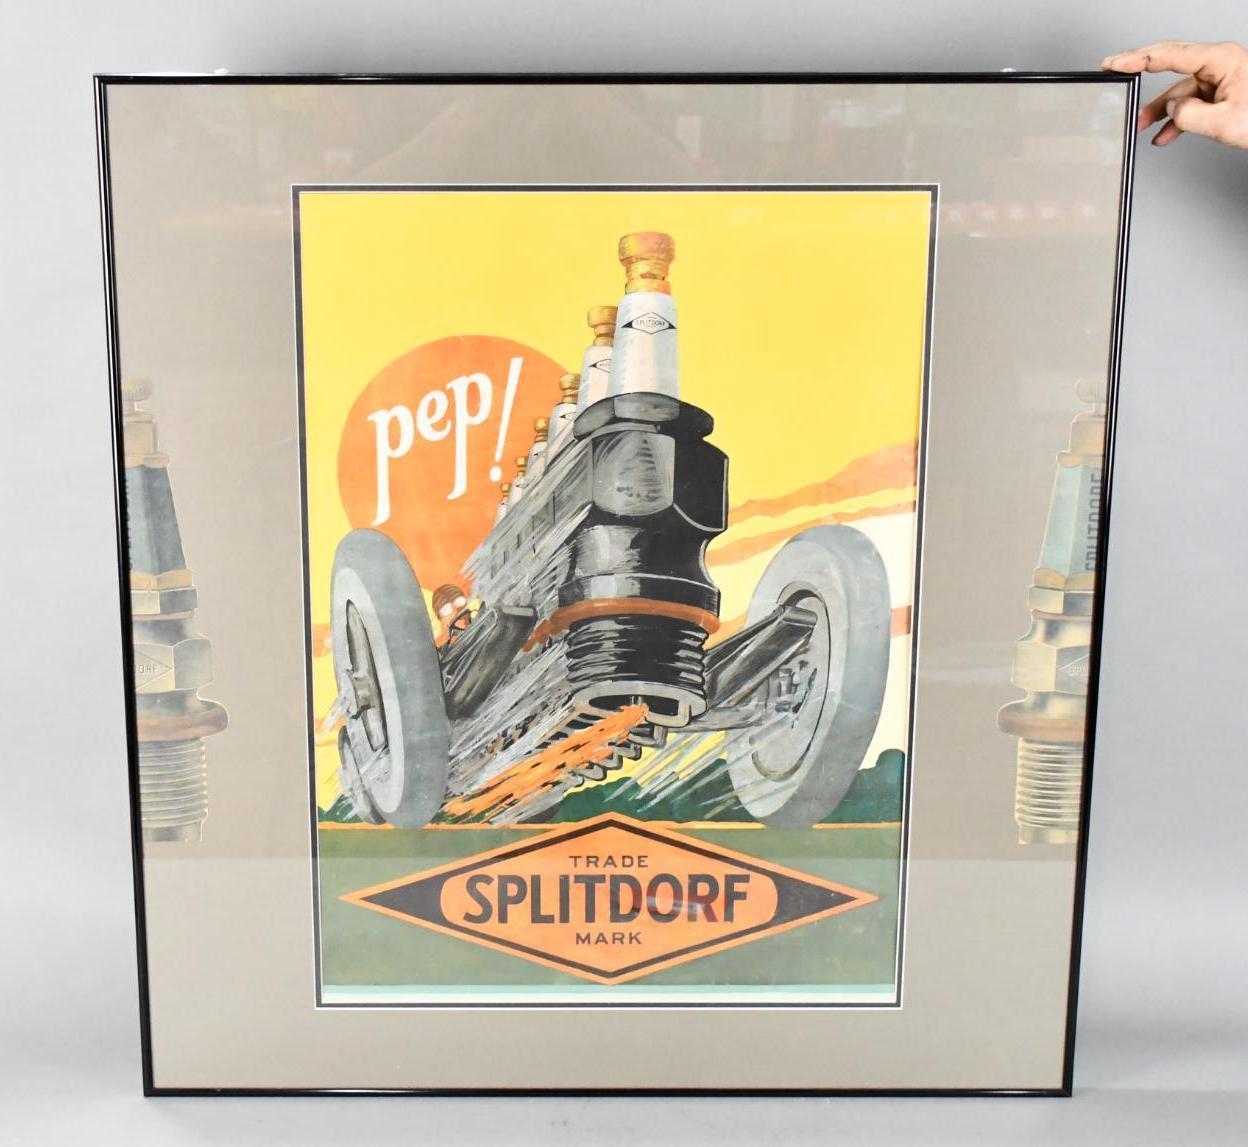 Splitdorf "Pep"! Racecar Poster